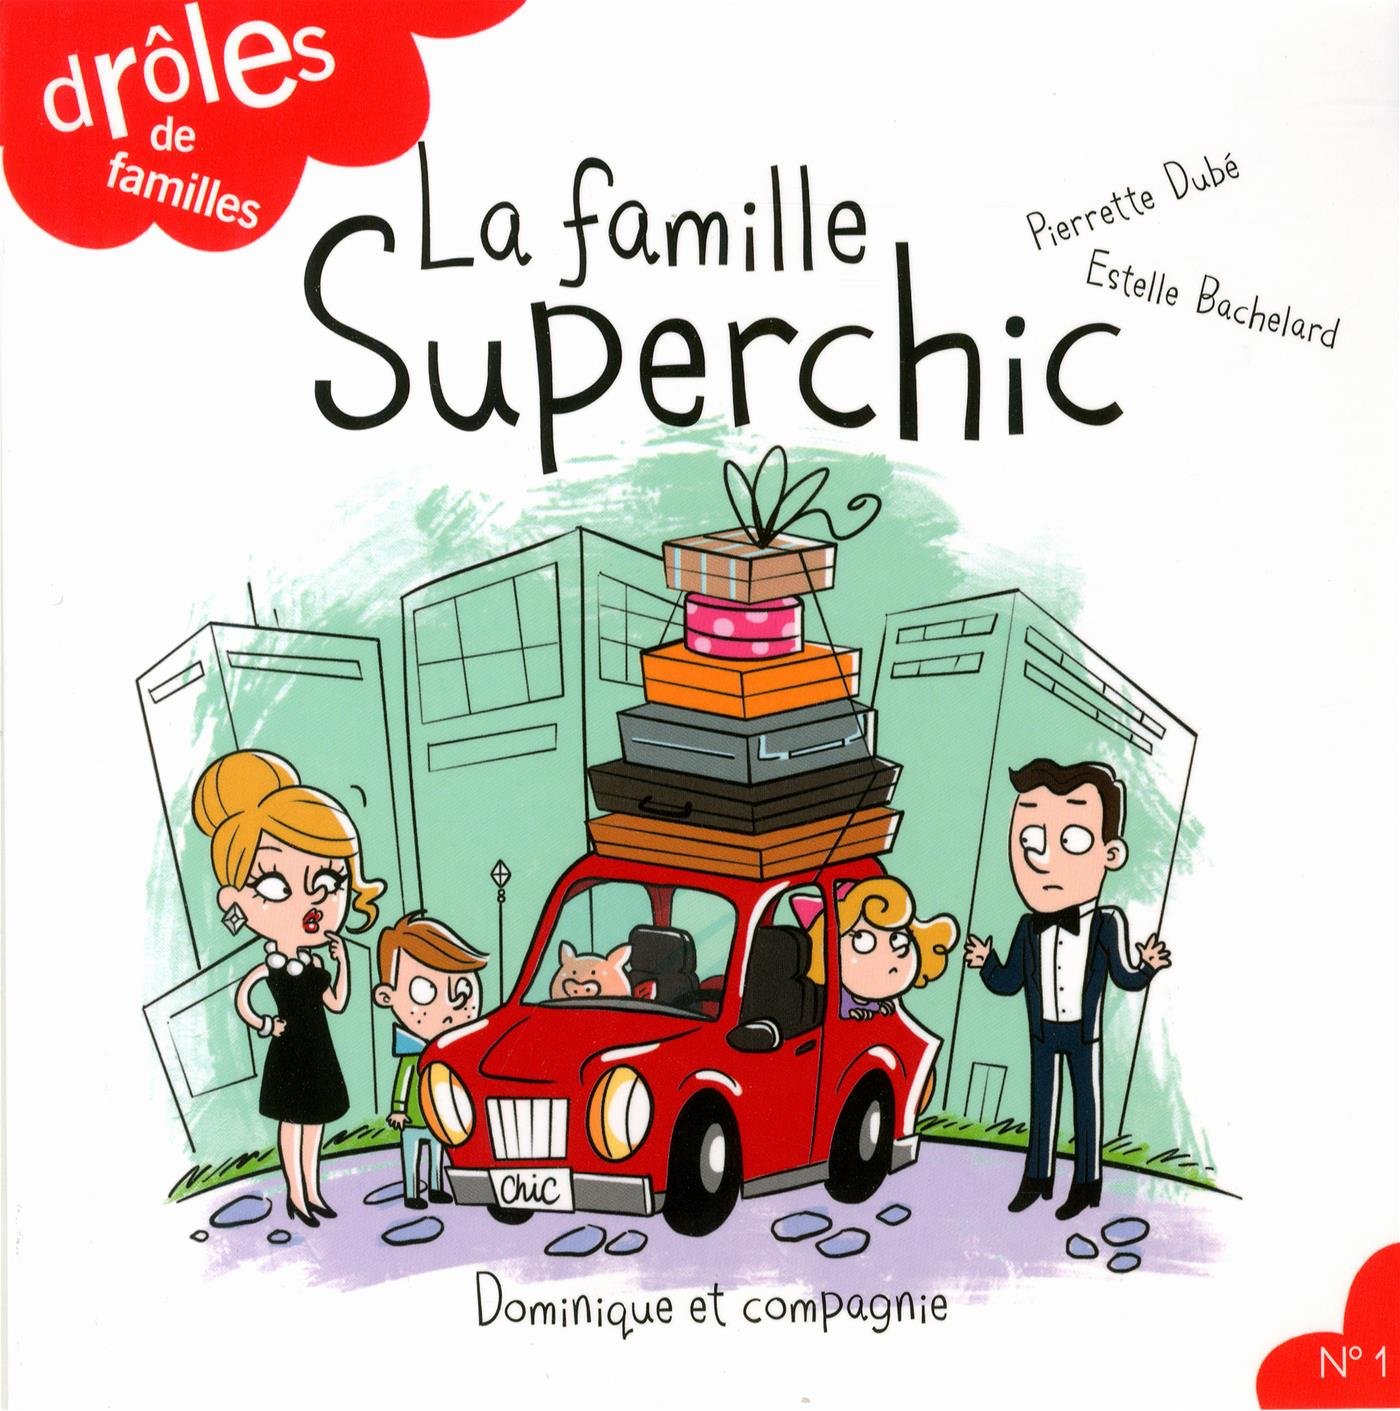 Drôle de familles # 1 : La famille superchic - Pierrette Dubé